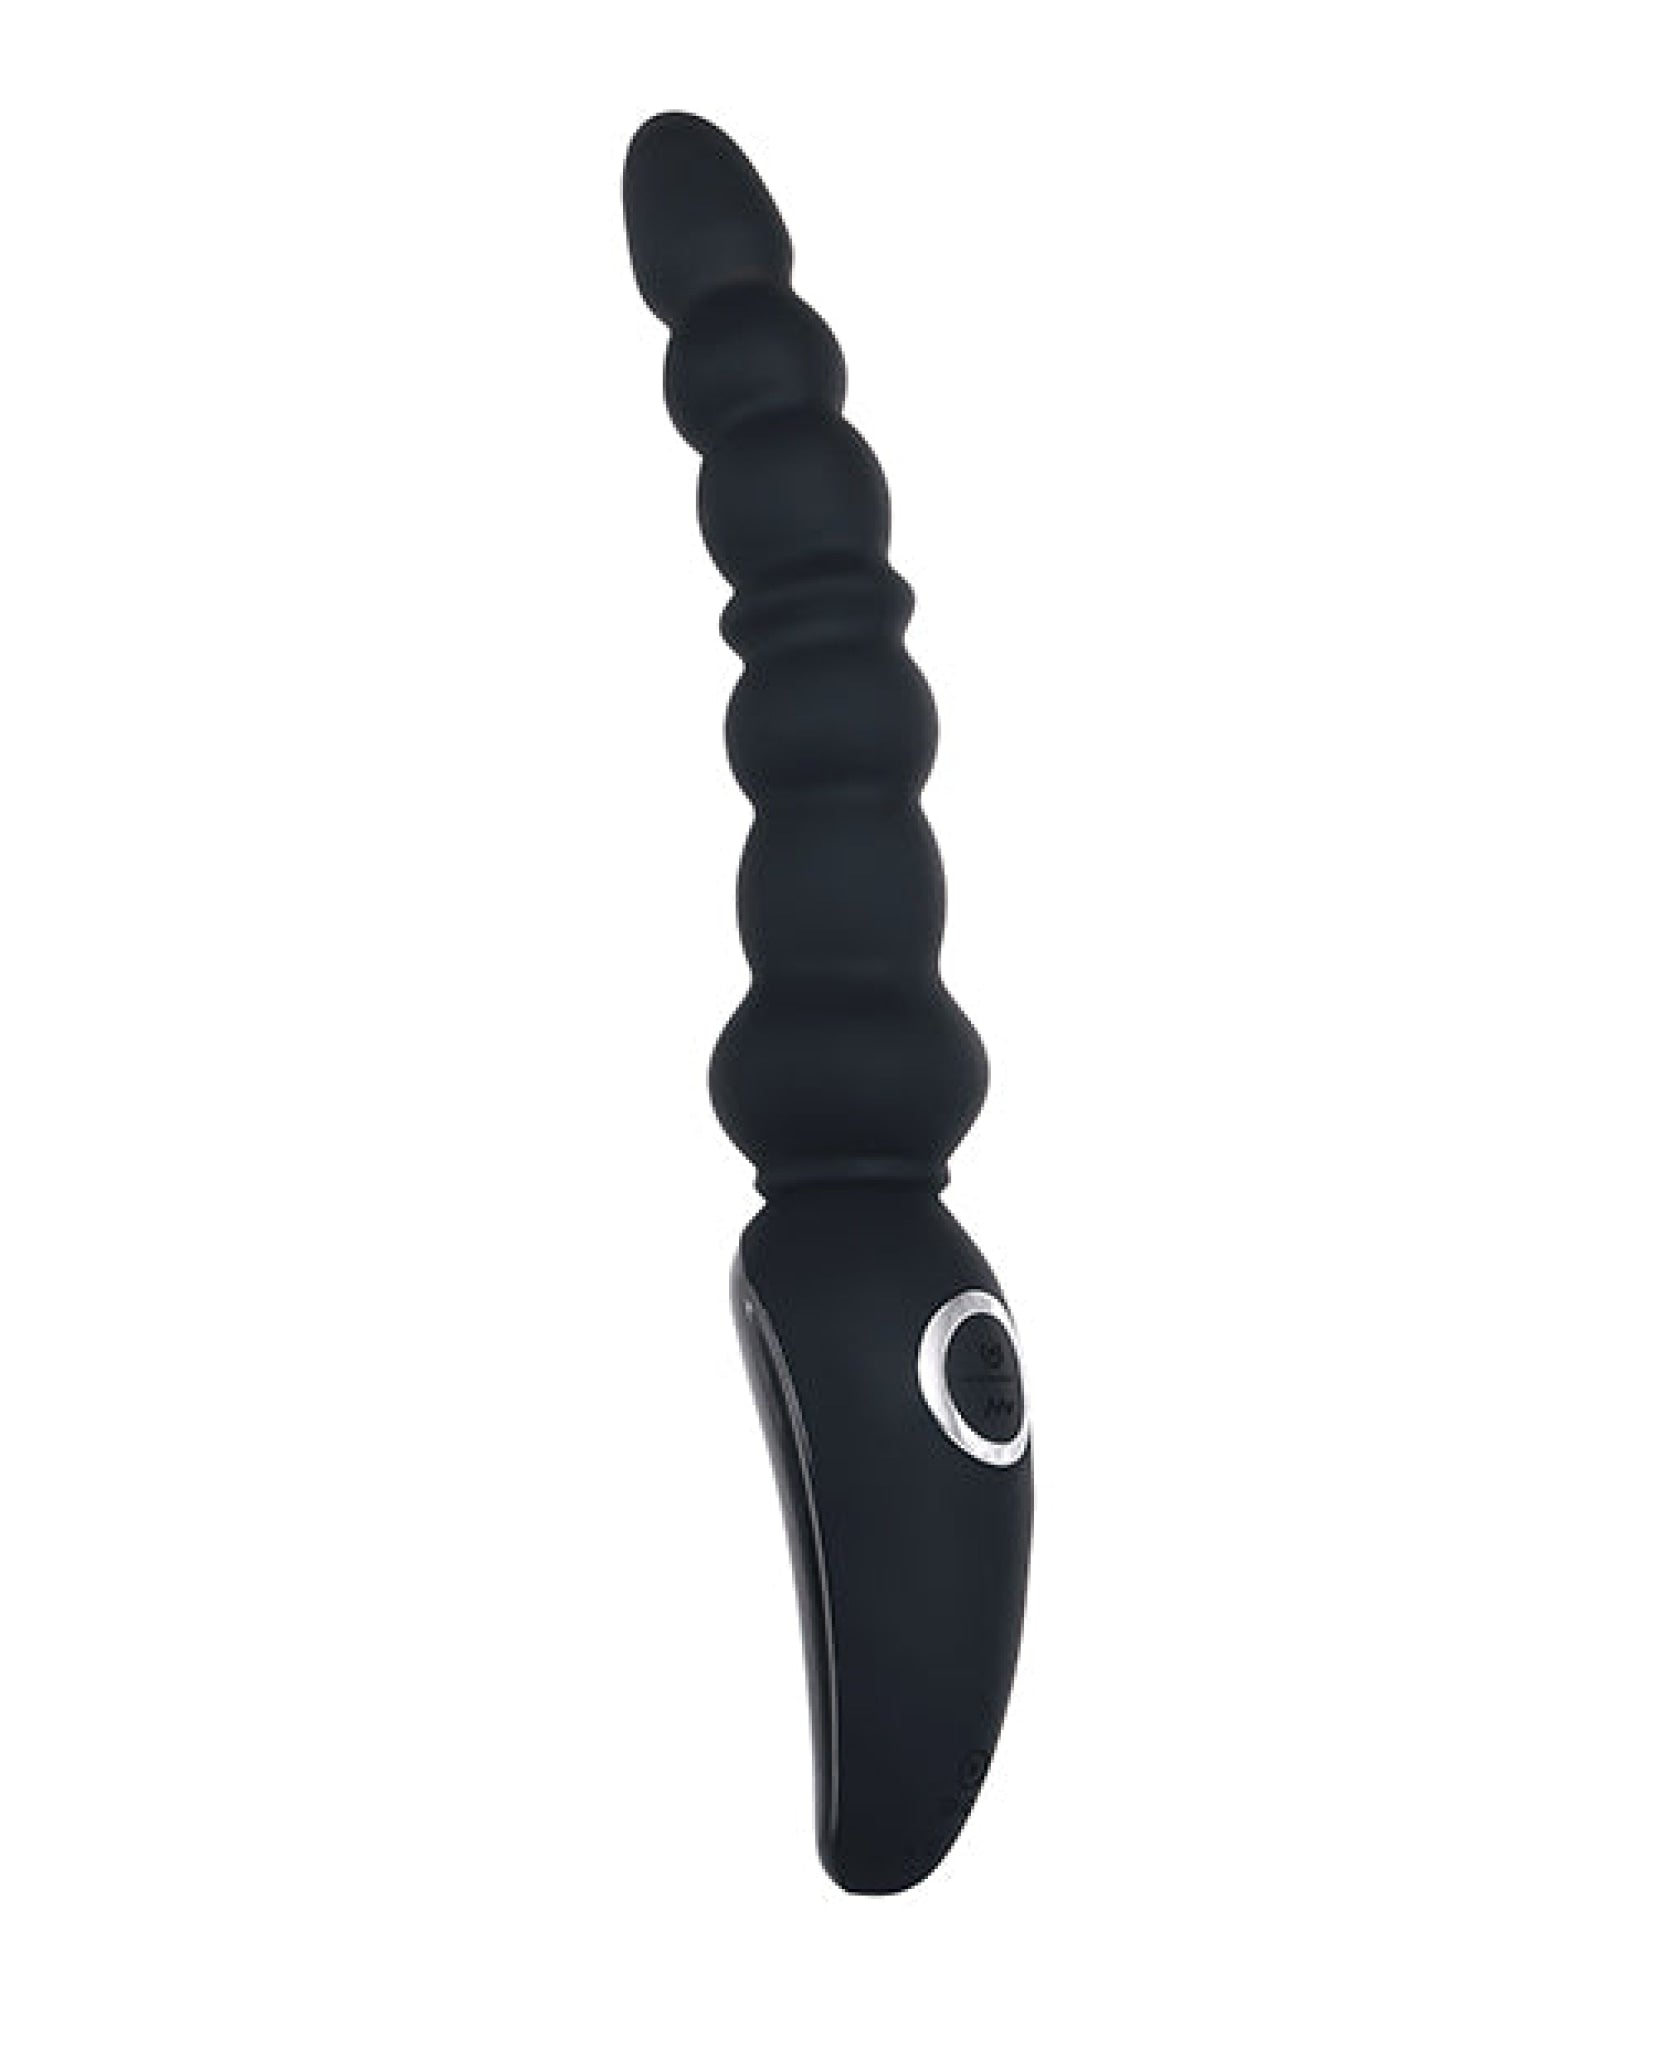 Evolved Magic Stick Beaded Vibrator - Black Evolved Novelties